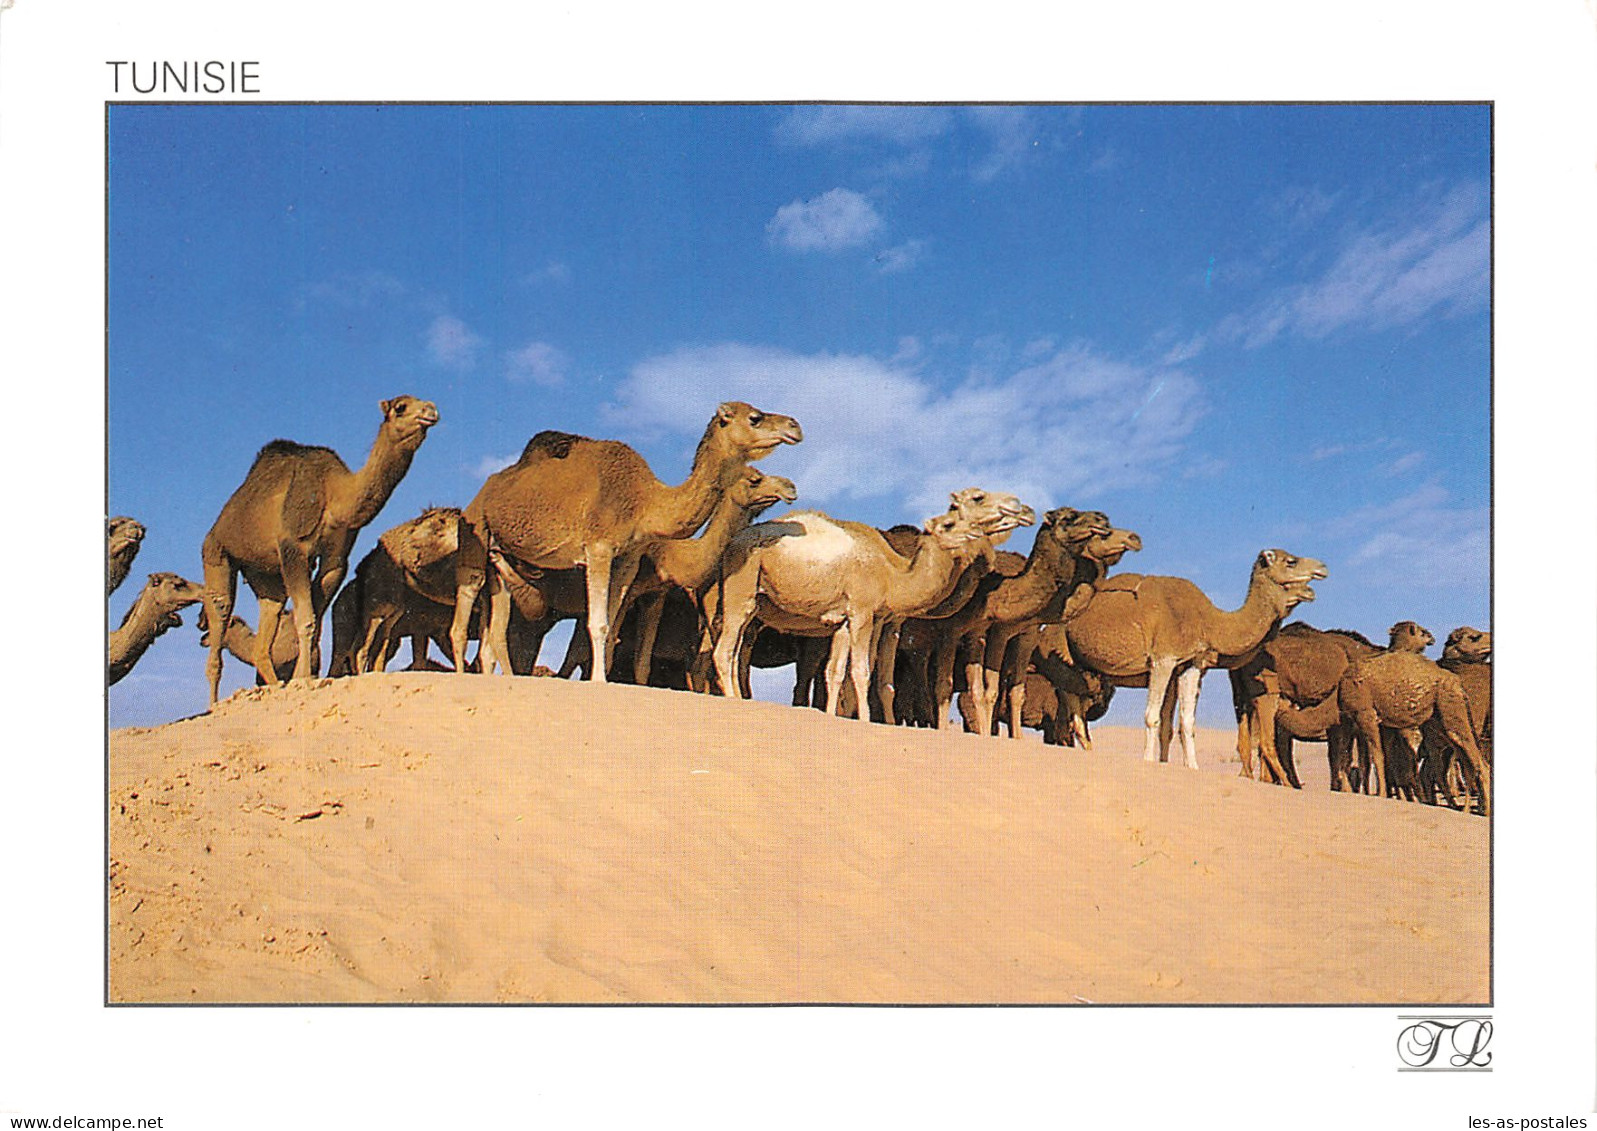 TUNISIE CAMELS - Tunisia